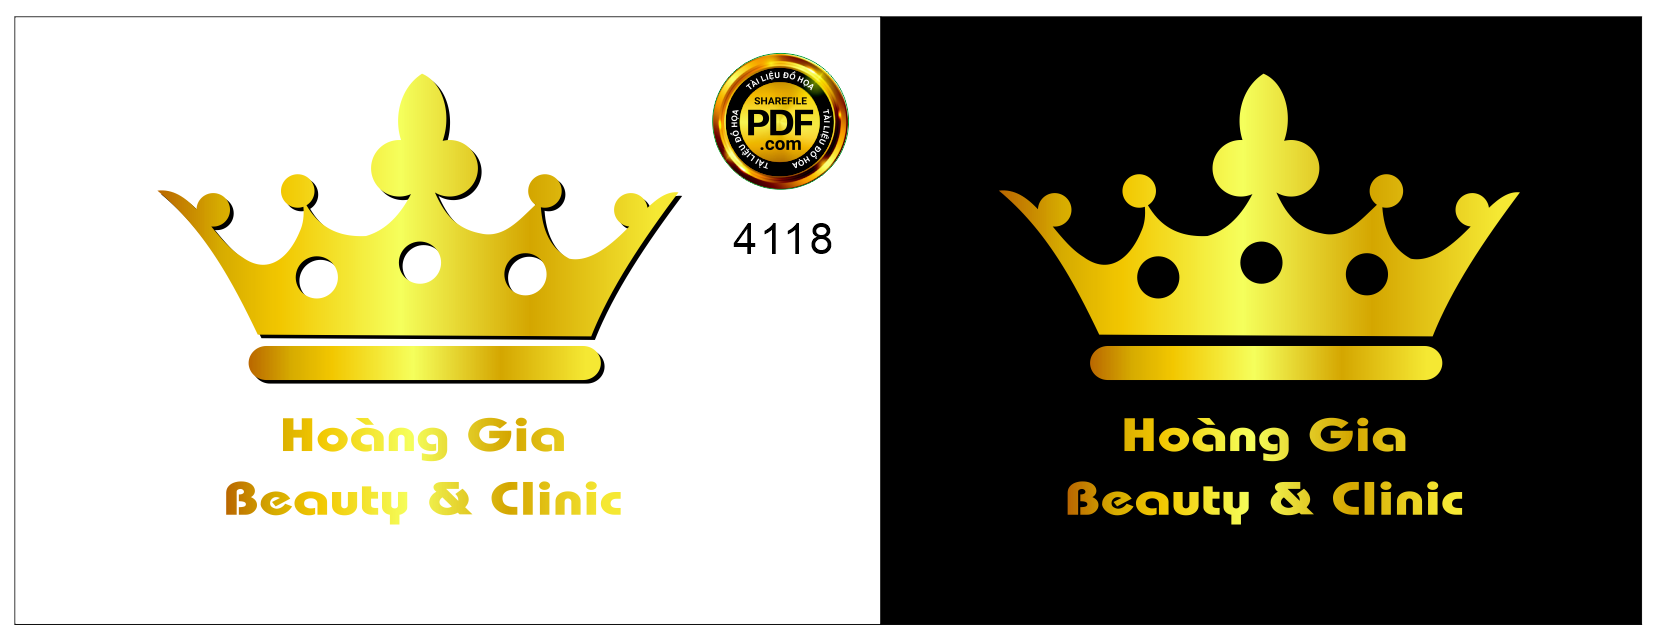 logo hoang gia beauty & clinic.png